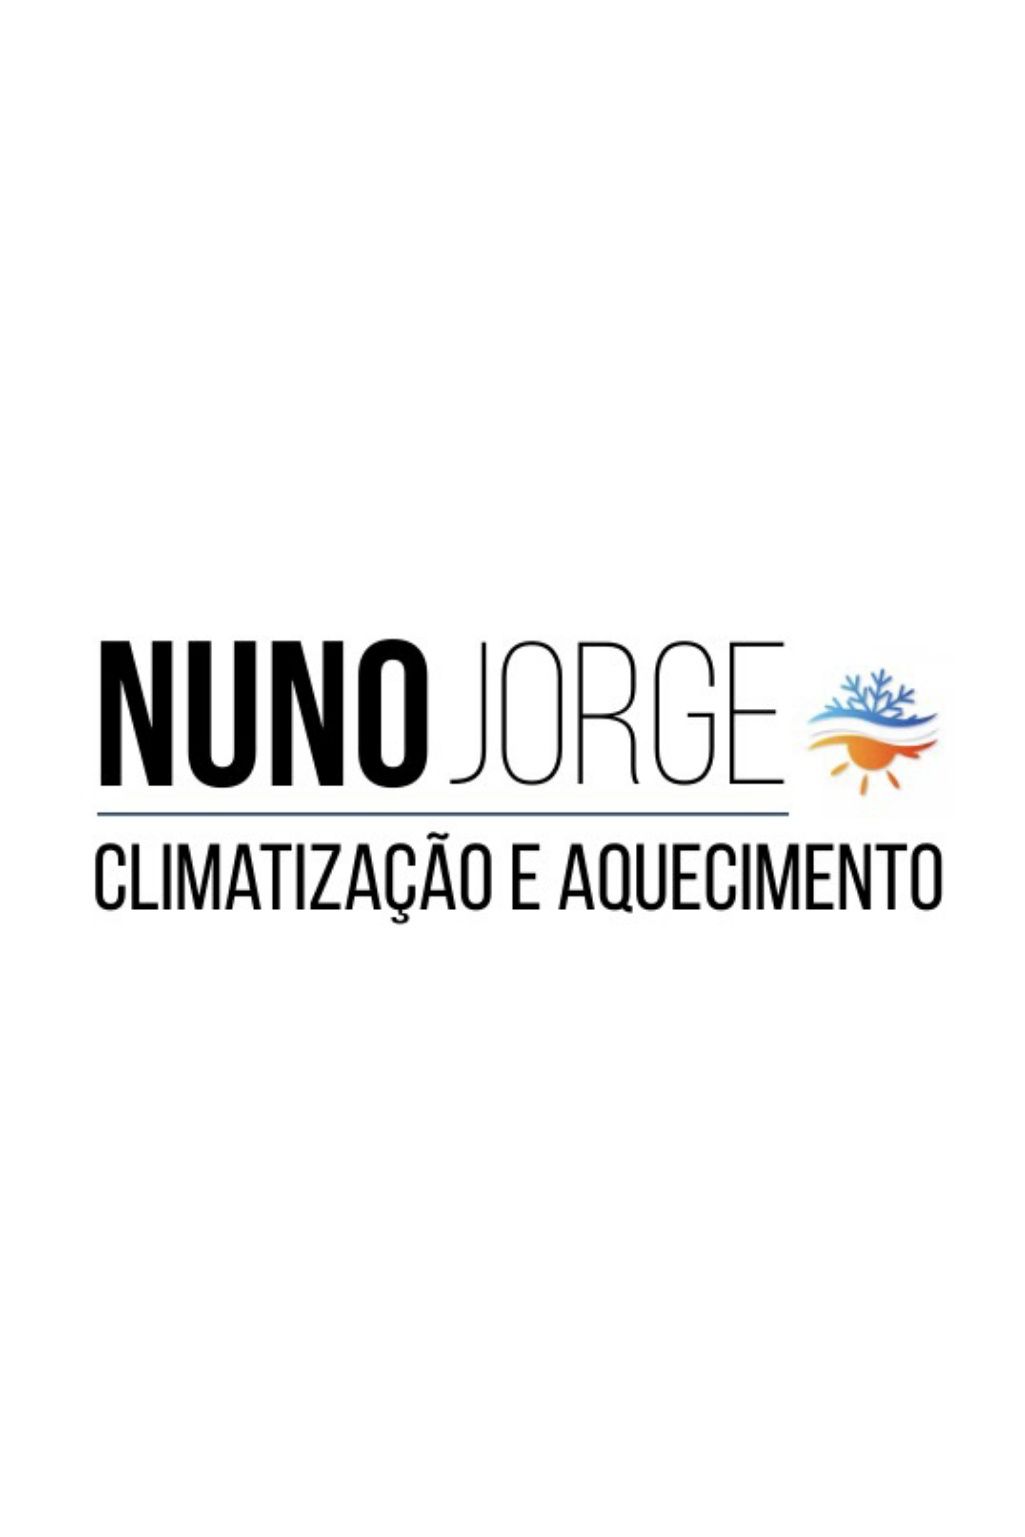 Nuno Jorge - Climatização e Aquecimento